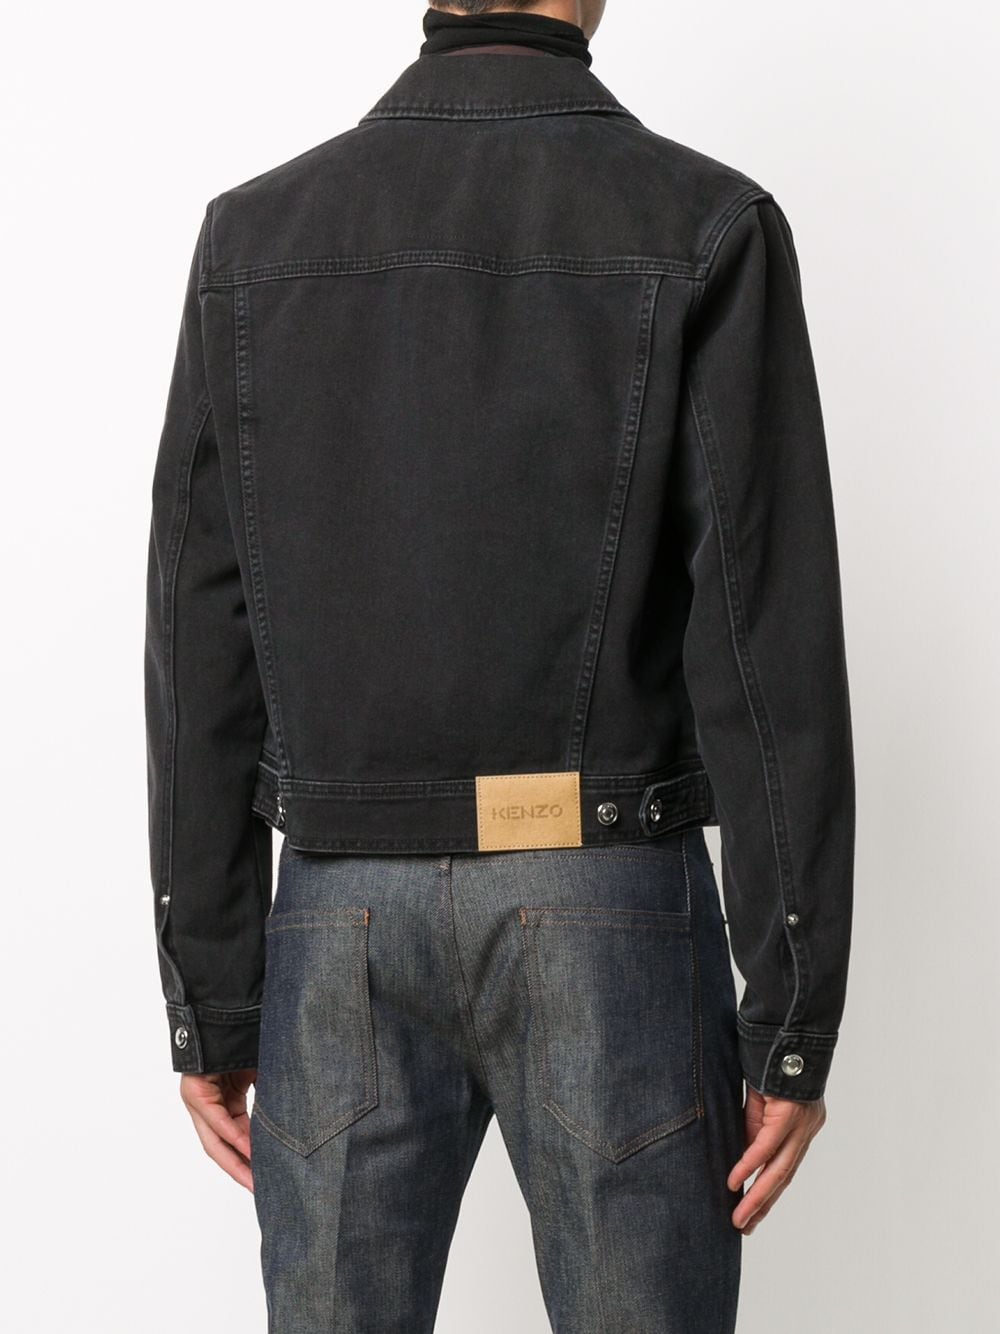 фото Kenzo джинсовая куртка с нашивкой-логотипом